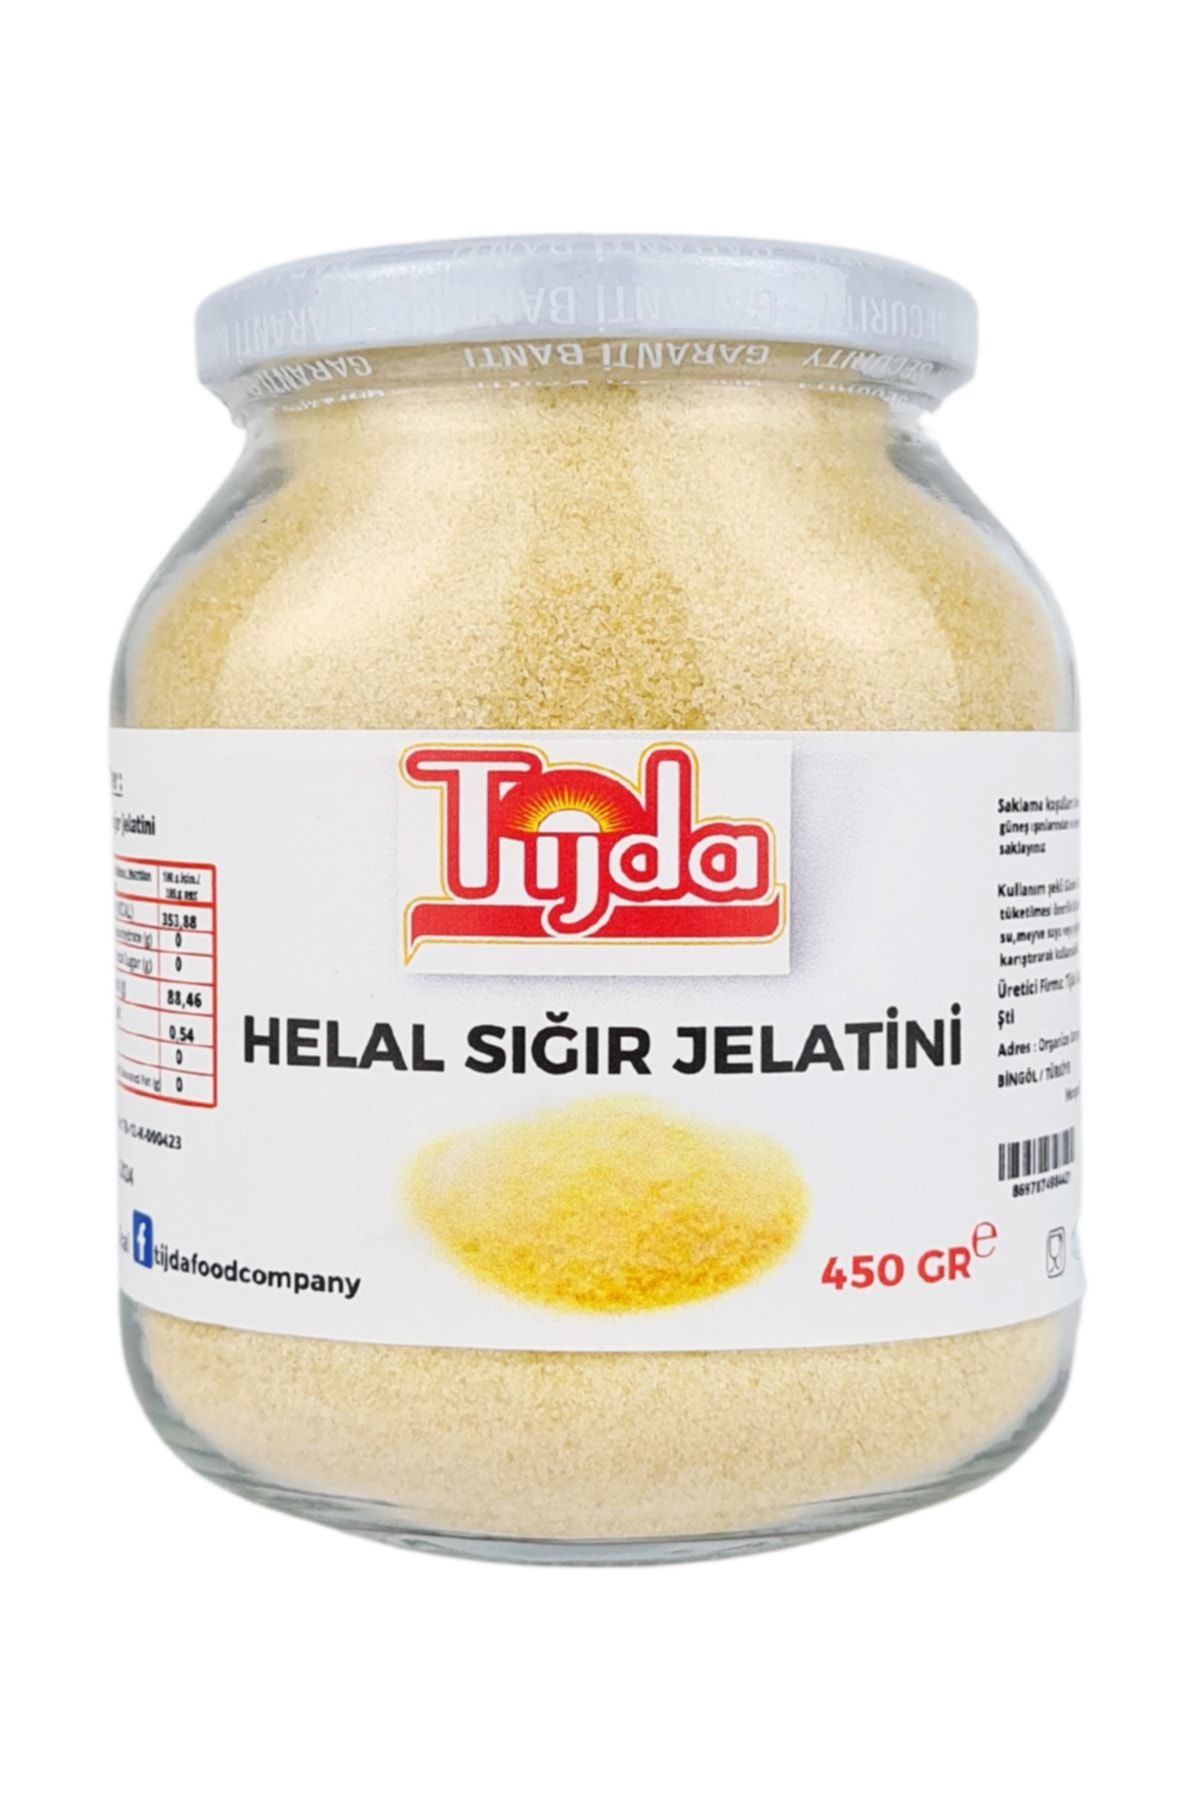 TİJDA Sığır Jelatini 450 gr (%100 SAF, TOZ JELATİN) Helal Sertifikalı